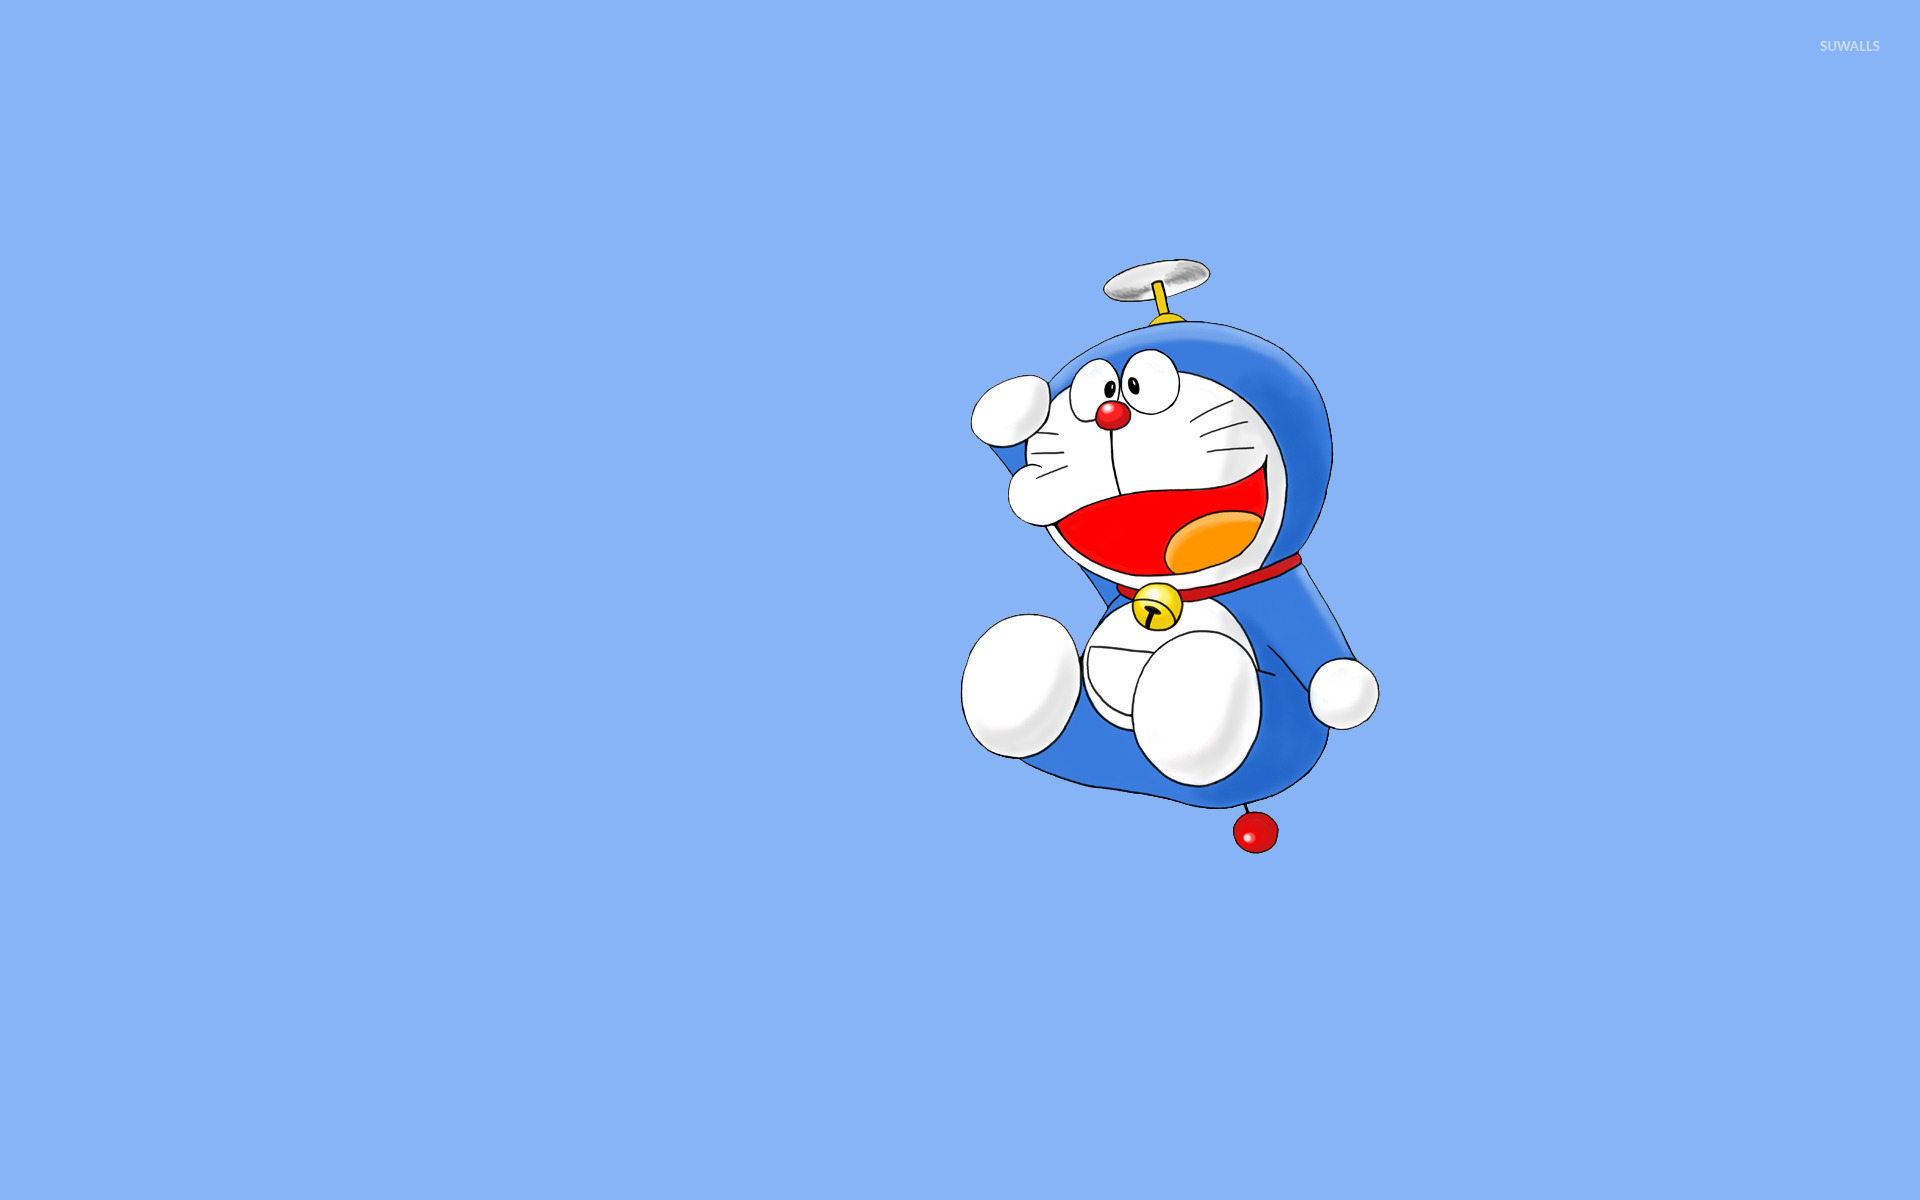 Nền tảng Doraemon sẽ mang lại một phong cách mới cho thiết bị của bạn. Hãy tải nền tảng của chú mèo máy nhí nhảnh, tươi sáng ngay từ bây giờ!